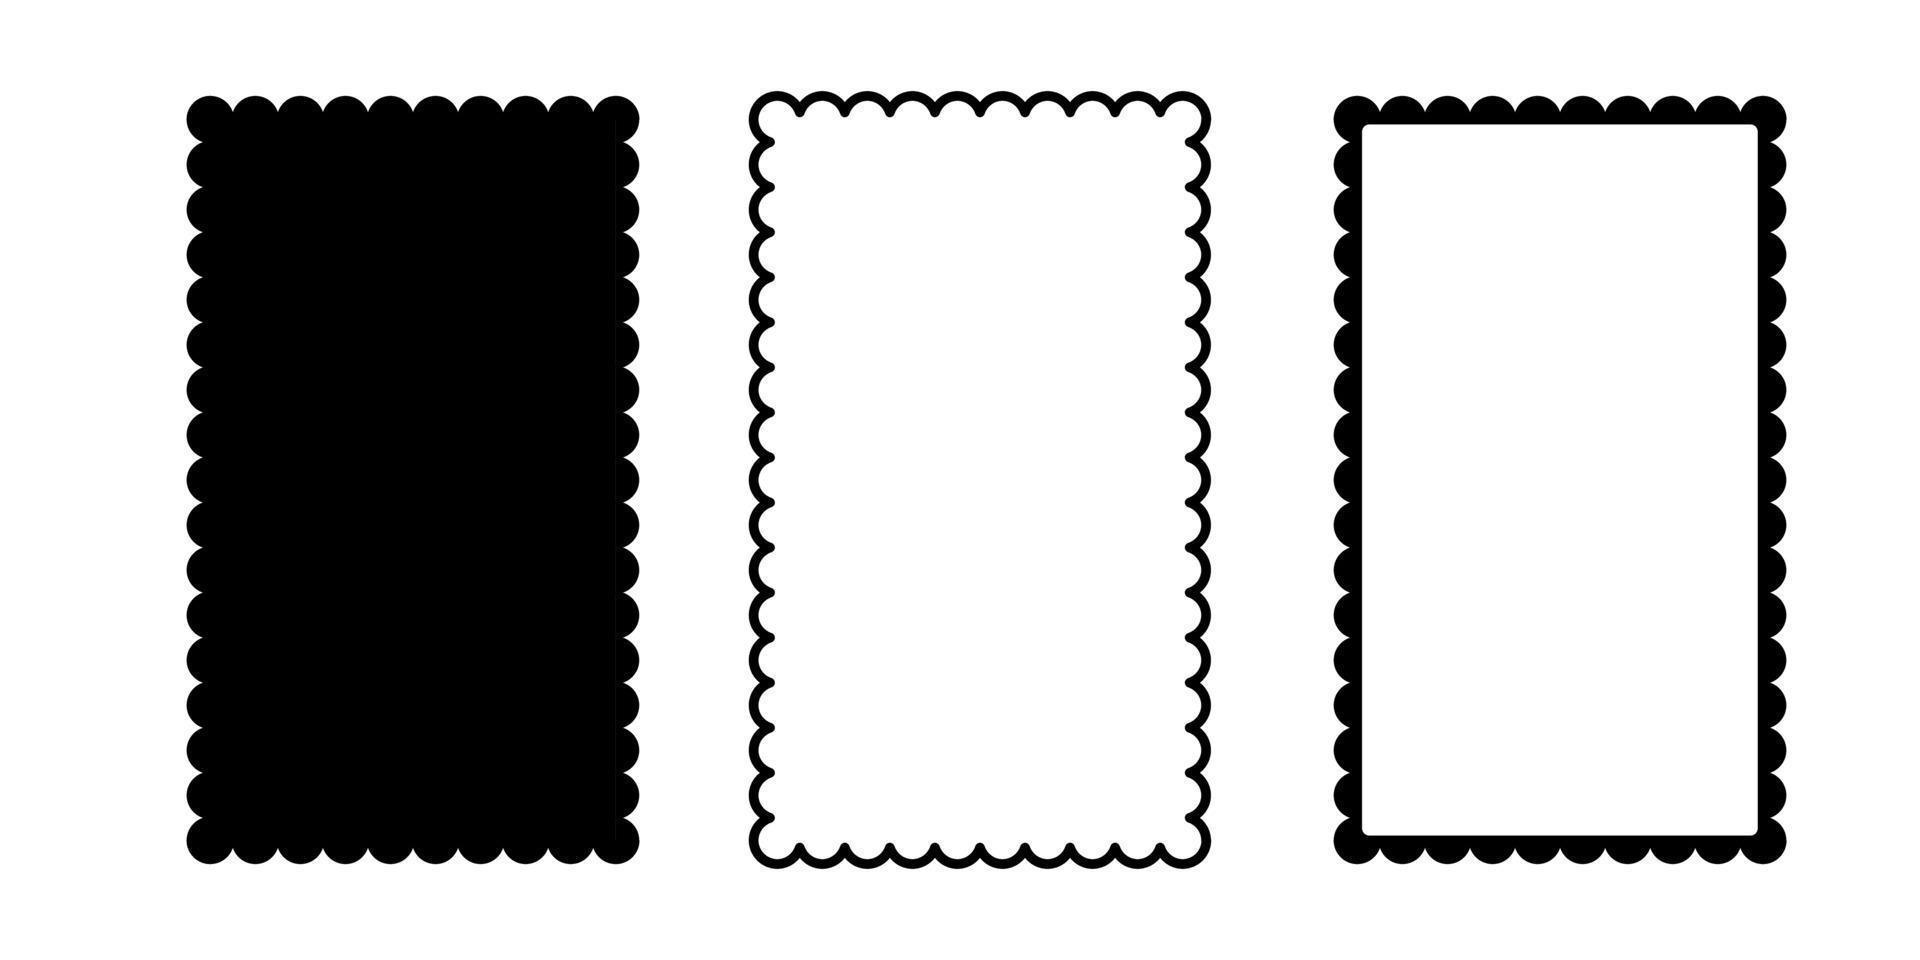 cadre carré festonné. forme de rectangle de bord festonné. forme simple d'étiquette et d'autocollant. cadre en dentelle de silhouette de fleur. répéter l'ornement de volants vintage. illustration vectorielle isolée sur fond blanc vecteur